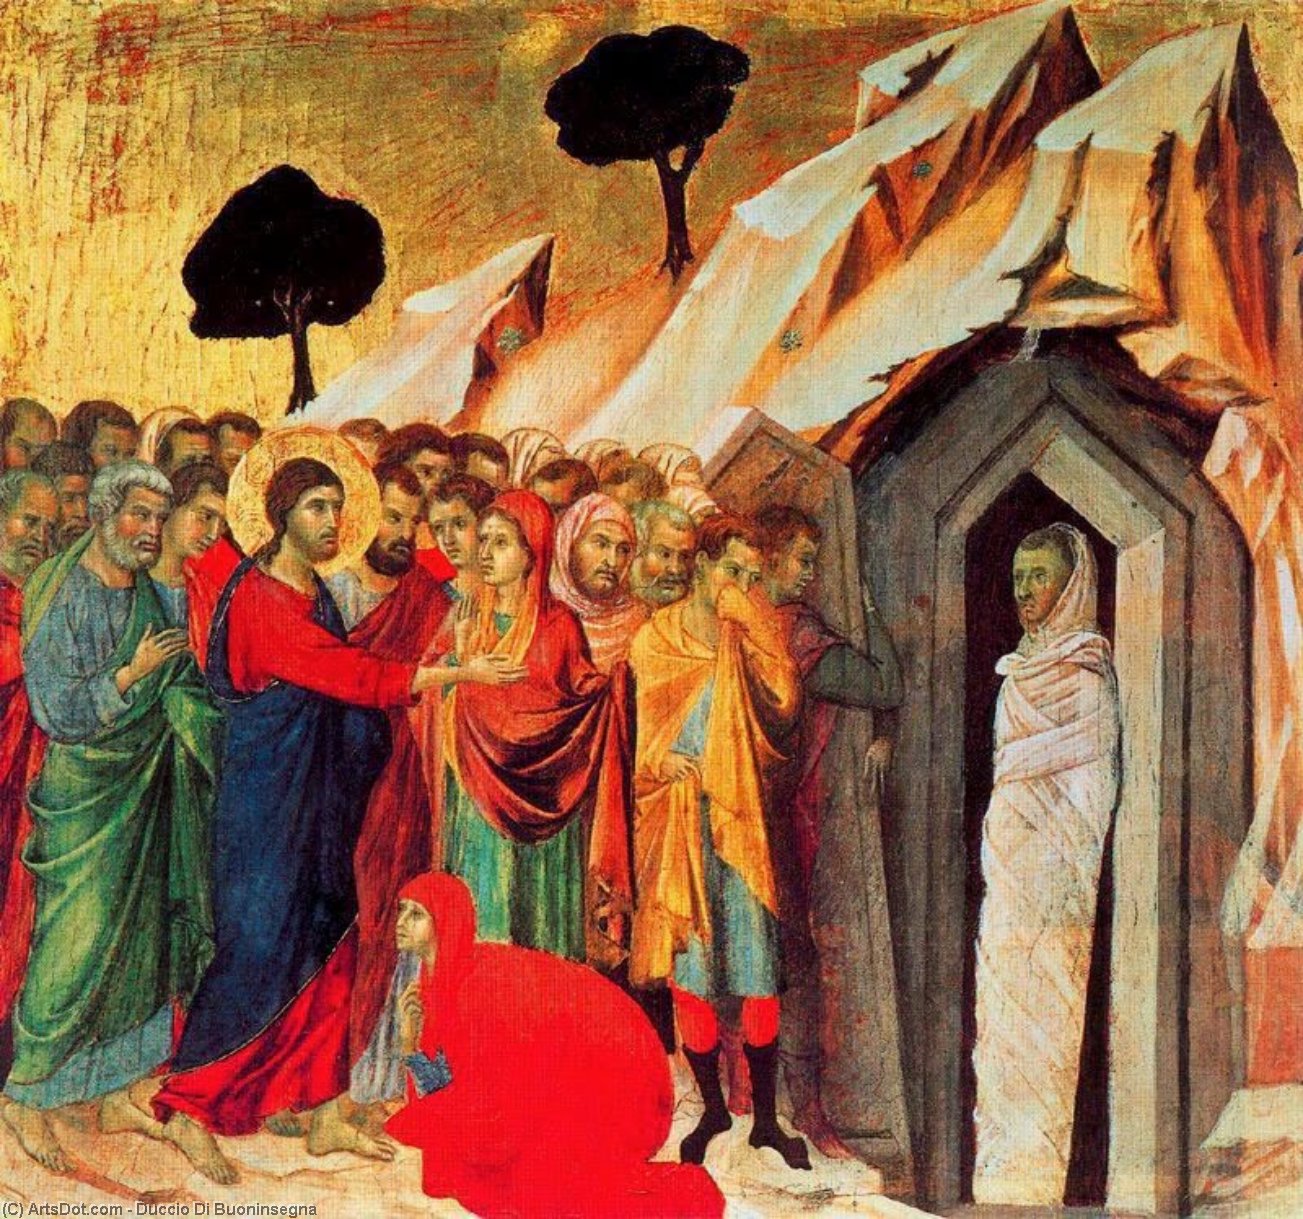 Wikioo.org - Bách khoa toàn thư về mỹ thuật - Vẽ tranh, Tác phẩm nghệ thuật Duccio Di Buoninsegna - MaestÓ (back, predella), The Raising of Lazarus